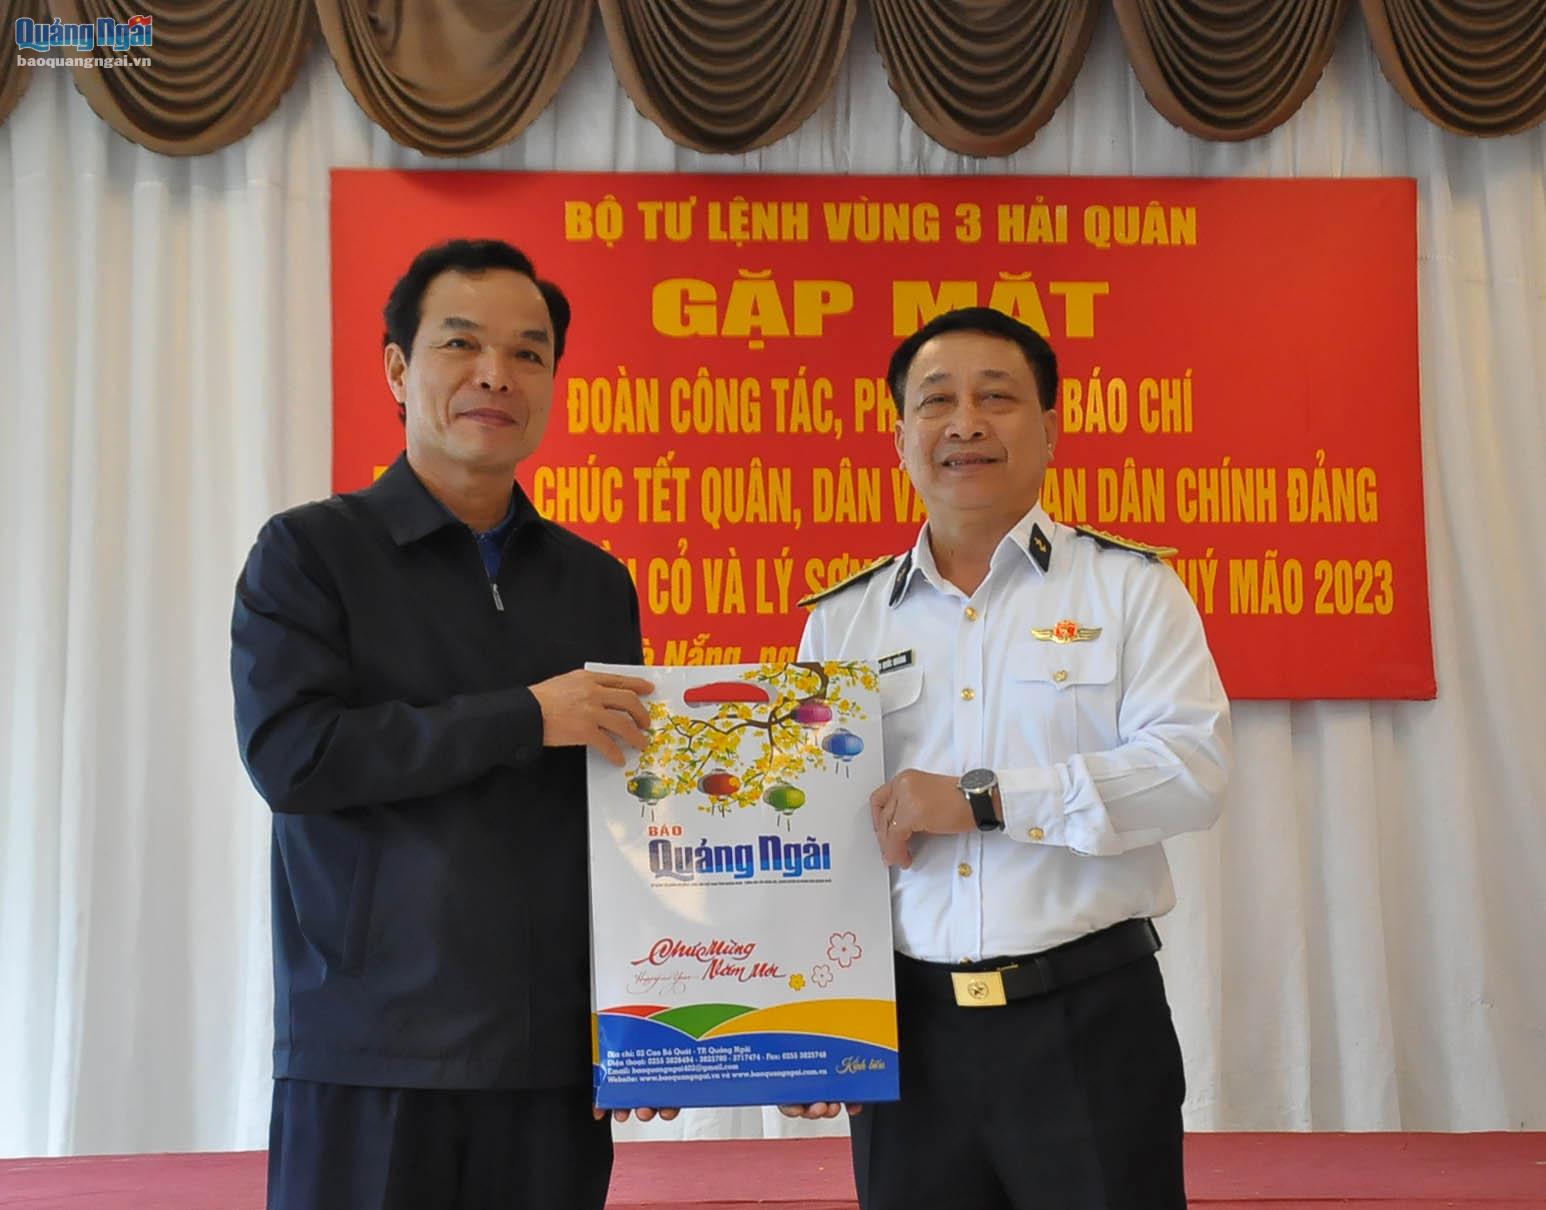           Trưởng Ban Tuyên giáo Tỉnh ủy Đặng Ngọc Dũng tặng ấn phẩm báo Xuân Quý Mão 2023 của Báo Quảng Ngãi cho thủ trưởng Bộ Tư lệnh Vùng 3 Hải quân.